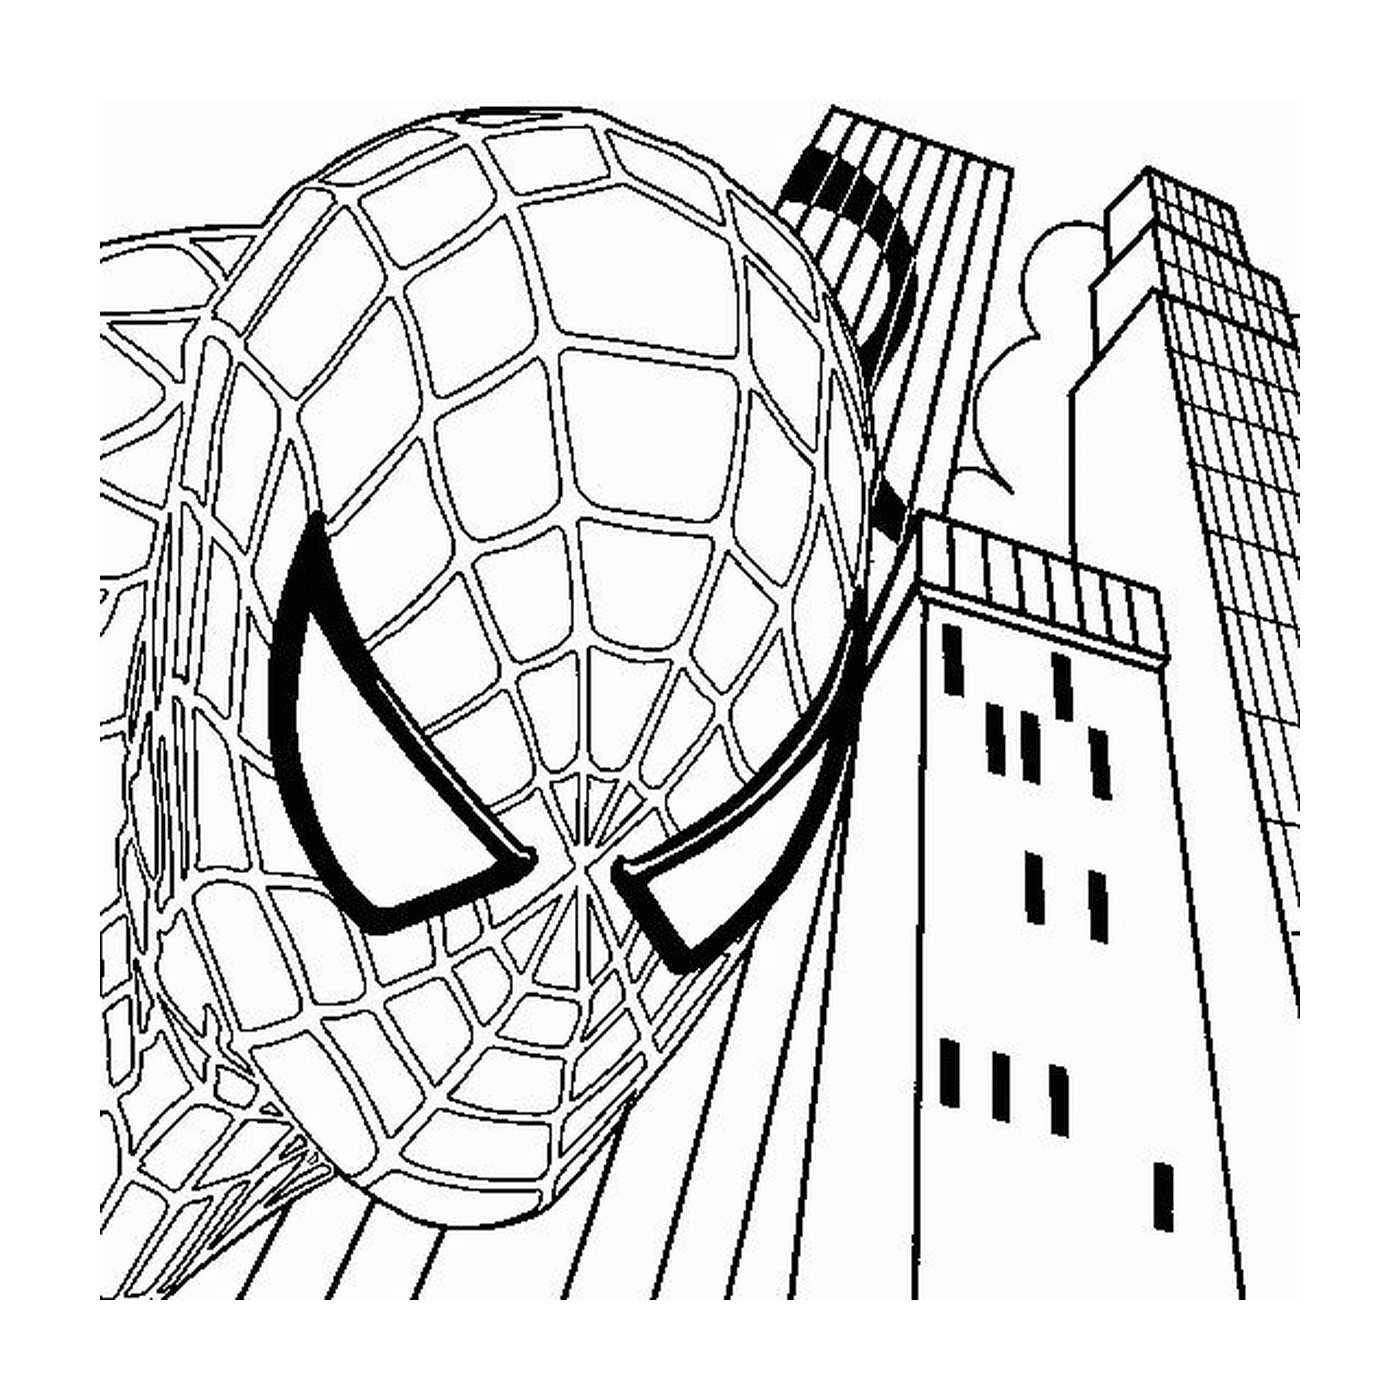  Centro da cidade Spiderman 